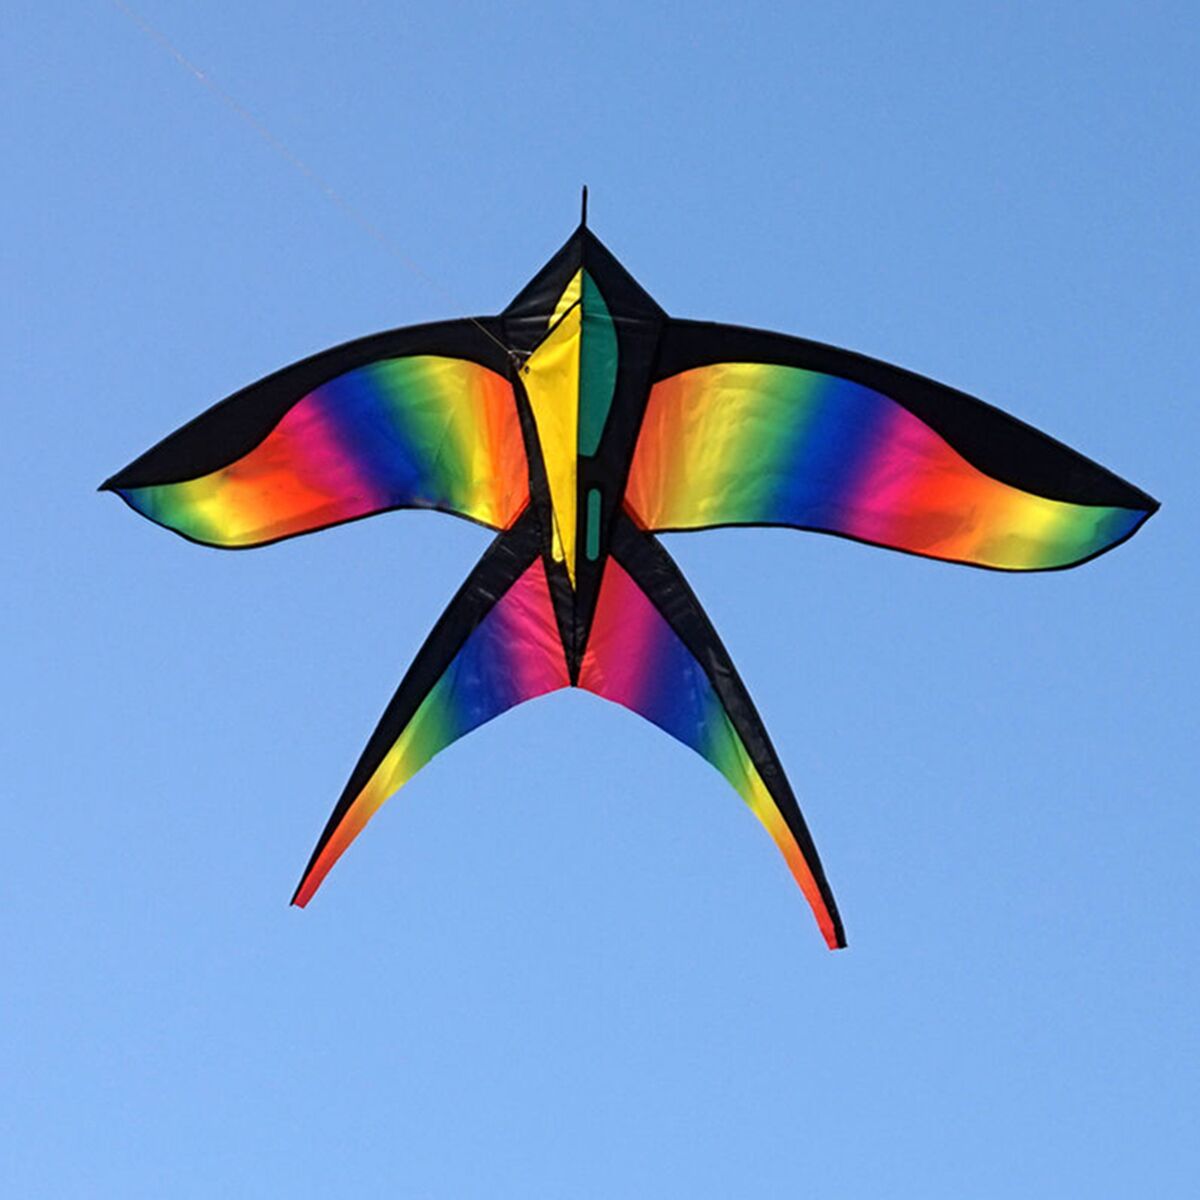 68in-Swallow-Kite-Bird-Kites-Single-Line-Outdoor-Fun-Sports-Toys-Delta-For-Kids-1130511-1